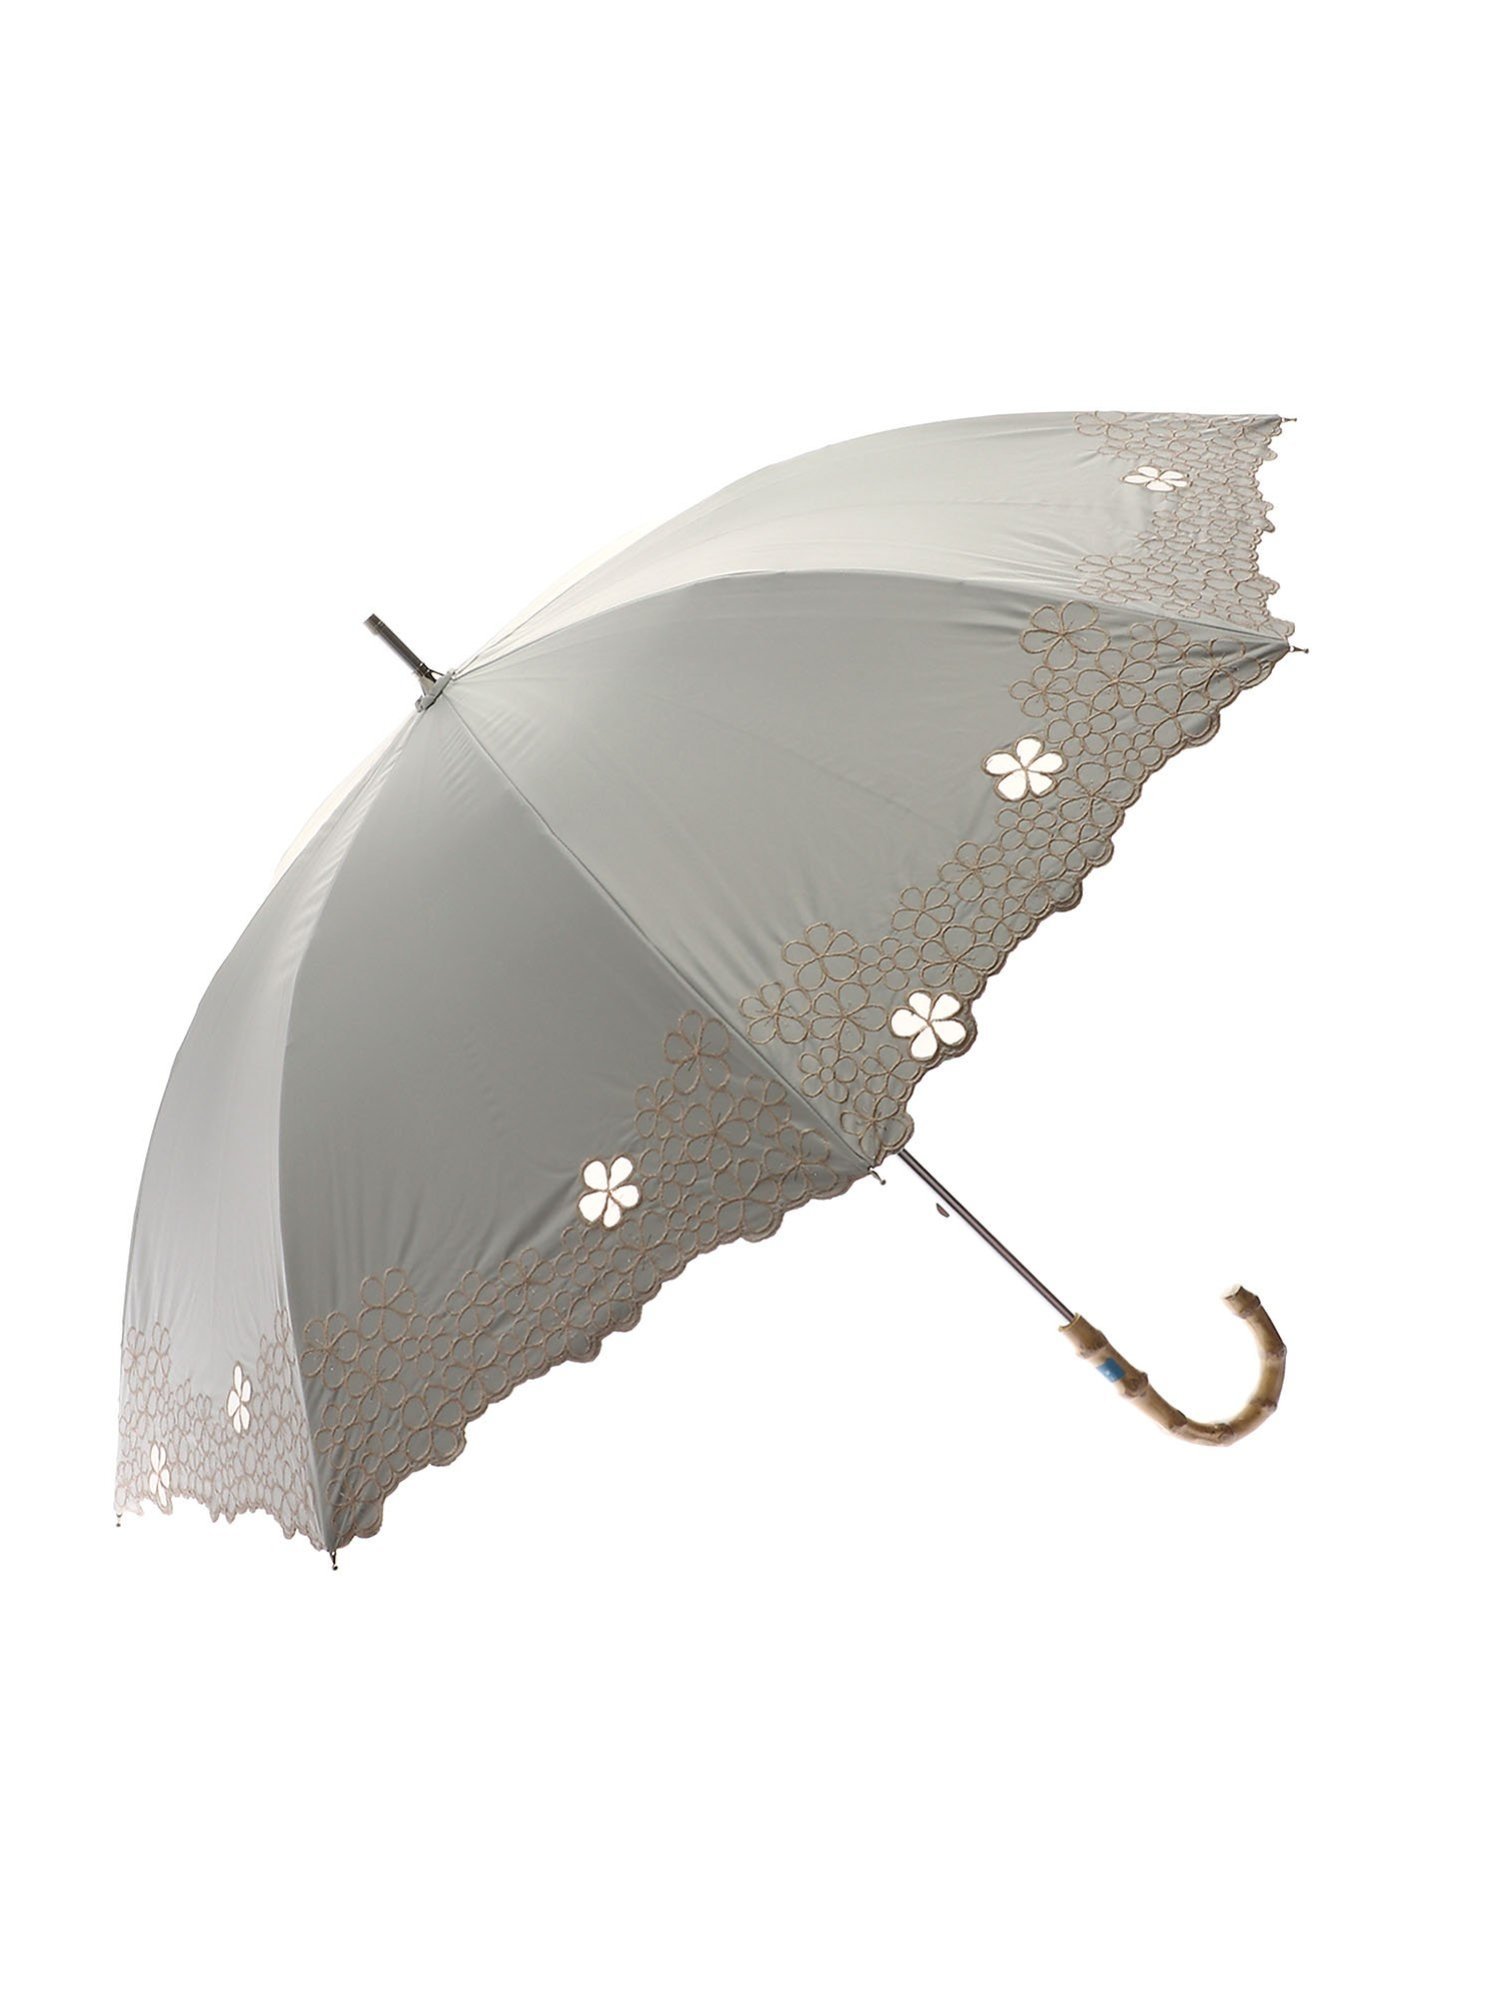 Sorcie Renom（ソシエ・レノ）晴雨兼用傘スライドショート傘一級遮光マーガレット刺繍〈素材〉遮光、遮熱に最も優れた「一級遮光」が認められています。遮光率99.99％以上。UV加工。突然の小雨にも安心な晴雨兼用☆〈デザイン〉刺繍の一部をくり抜き、オーガンジーで切り継いでいます。プリントには出せない高級感が、刺繍にはあります。簡単開閉仕様のため、わざわざ骨を整える必要はありません☆また手元に竹を採用し天然素材ならではの涼しげな印象です。型番：28-7031-01-50 V17346【採寸】サイズ親骨長さ(最短)長さ(最長)5050.0cm68.0cm76.5cm商品のサイズについて【商品詳細】中国素材：ポリエステル100%サイズ：50※画面上と実物では多少色具合が異なって見える場合もございます。ご了承ください。商品のカラーについて 【予約商品について】 ※「先行予約販売中」「予約販売中」をご注文の際は予約商品についてをご確認ください。Sorcie Renom（ソシエ・レノ）晴雨兼用傘スライドショート傘一級遮光マーガレット刺繍〈素材〉遮光、遮熱に最も優れた「一級遮光」が認められています。遮光率99.99％以上。UV加工。突然の小雨にも安心な晴雨兼用☆〈デザイン〉刺繍の一部をくり抜き、オーガンジーで切り継いでいます。プリントには出せない高級感が、刺繍にはあります。簡単開閉仕様のため、わざわざ骨を整える必要はありません☆また手元に竹を採用し天然素材ならではの涼しげな印象です。型番：28-7031-01-50 V17346【採寸】サイズ親骨長さ(最短)長さ(最長)5050.0cm68.0cm76.5cm商品のサイズについて【商品詳細】中国素材：ポリエステル100%サイズ：50※画面上と実物では多少色具合が異なって見える場合もございます。ご了承ください。商品のカラーについて 【予約商品について】 ※「先行予約販売中」「予約販売中」をご注文の際は予約商品についてをご確認ください。■重要なお知らせ※ 当店では、ギフト配送サービス及びラッピングサービスを行っておりません。ご注文者様とお届け先が違う場合でも、タグ（値札）付「納品書 兼 返品連絡票」同梱の状態でお送り致しますのでご了承ください。 ラッピング・ギフト配送について※ 2点以上ご購入の場合、全ての商品が揃い次第一括でのお届けとなります。お届け予定日の異なる商品をお買い上げの場合はご注意下さい。お急ぎの商品がございましたら分けてご購入いただきますようお願い致します。発送について ※ 買い物カートに入れるだけでは在庫確保されませんのでお早めに購入手続きをしてください。当店では在庫を複数サイトで共有しているため、同時にご注文があった場合、売切れとなってしまう事がございます。お手数ですが、ご注文後に当店からお送りする「ご注文内容の確認メール」をご確認ください。ご注文の確定について ※ Rakuten Fashionの商品ページに記載しているメーカー希望小売価格は、楽天市場「商品価格ナビ」に登録されている価格に準じています。 商品の価格についてSorcie RenomSorcie Renomの傘・長傘ファッション雑貨ご注文・お届けについて発送ガイドラッピンググッズ3,980円以上送料無料ご利用ガイド